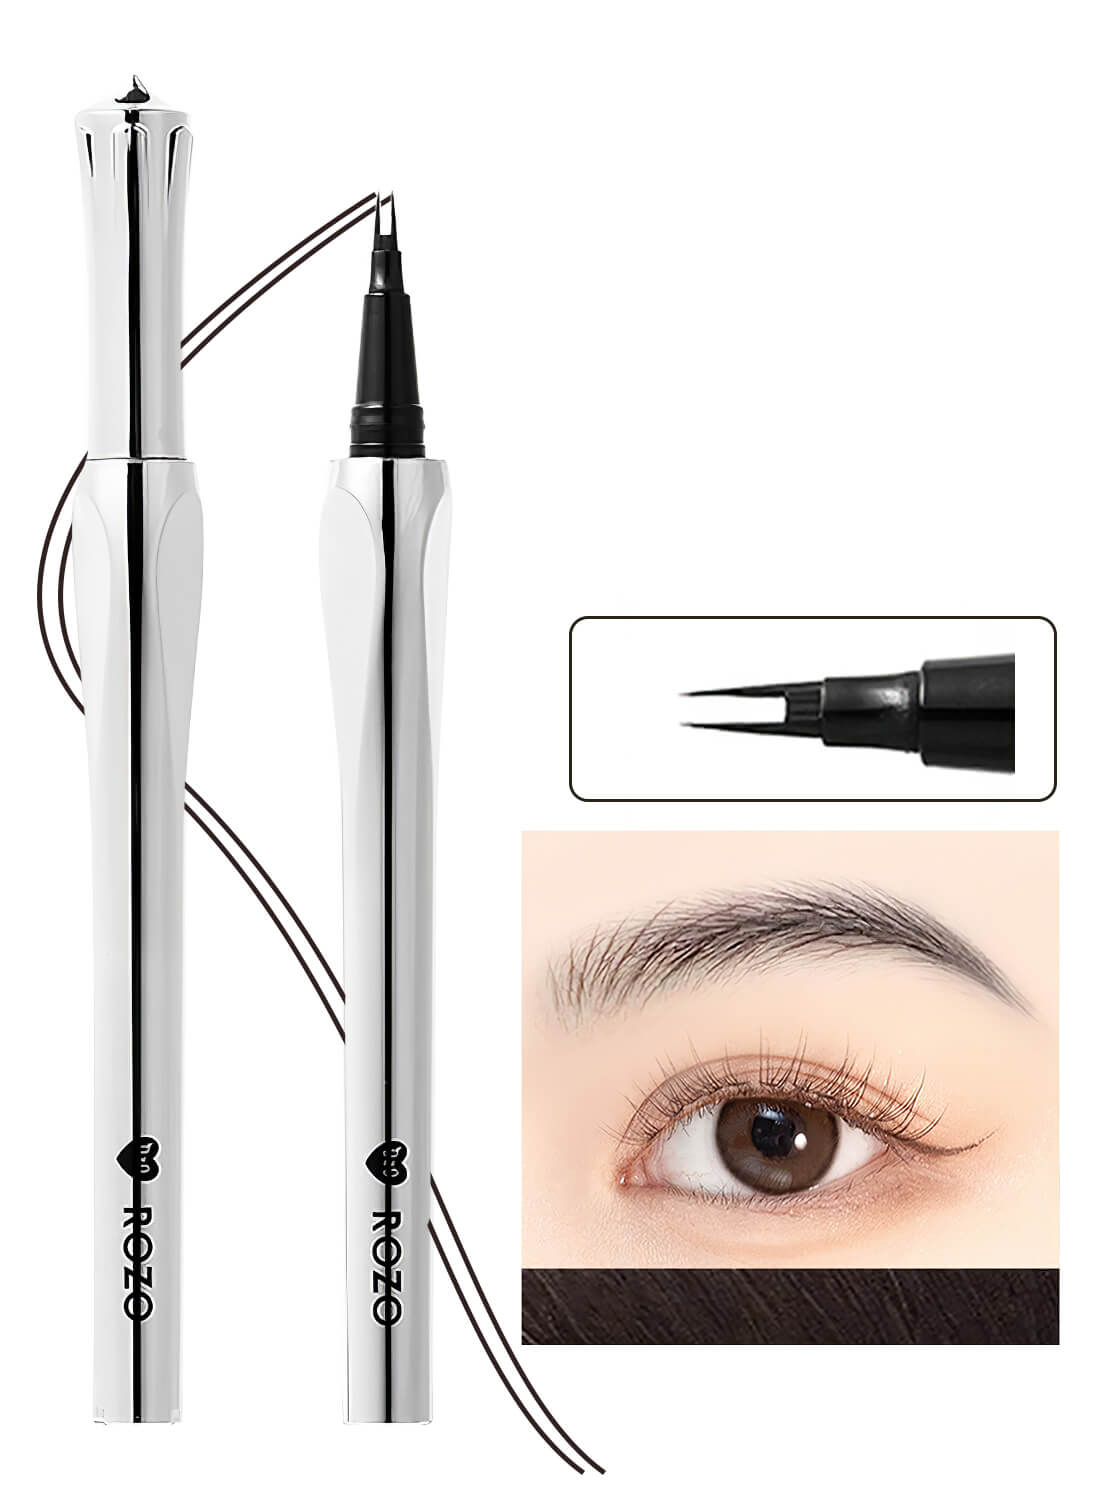 Eyebrow Pen with Micro-Fork Tip, 2 Tip Microblade Eyebrow Pen